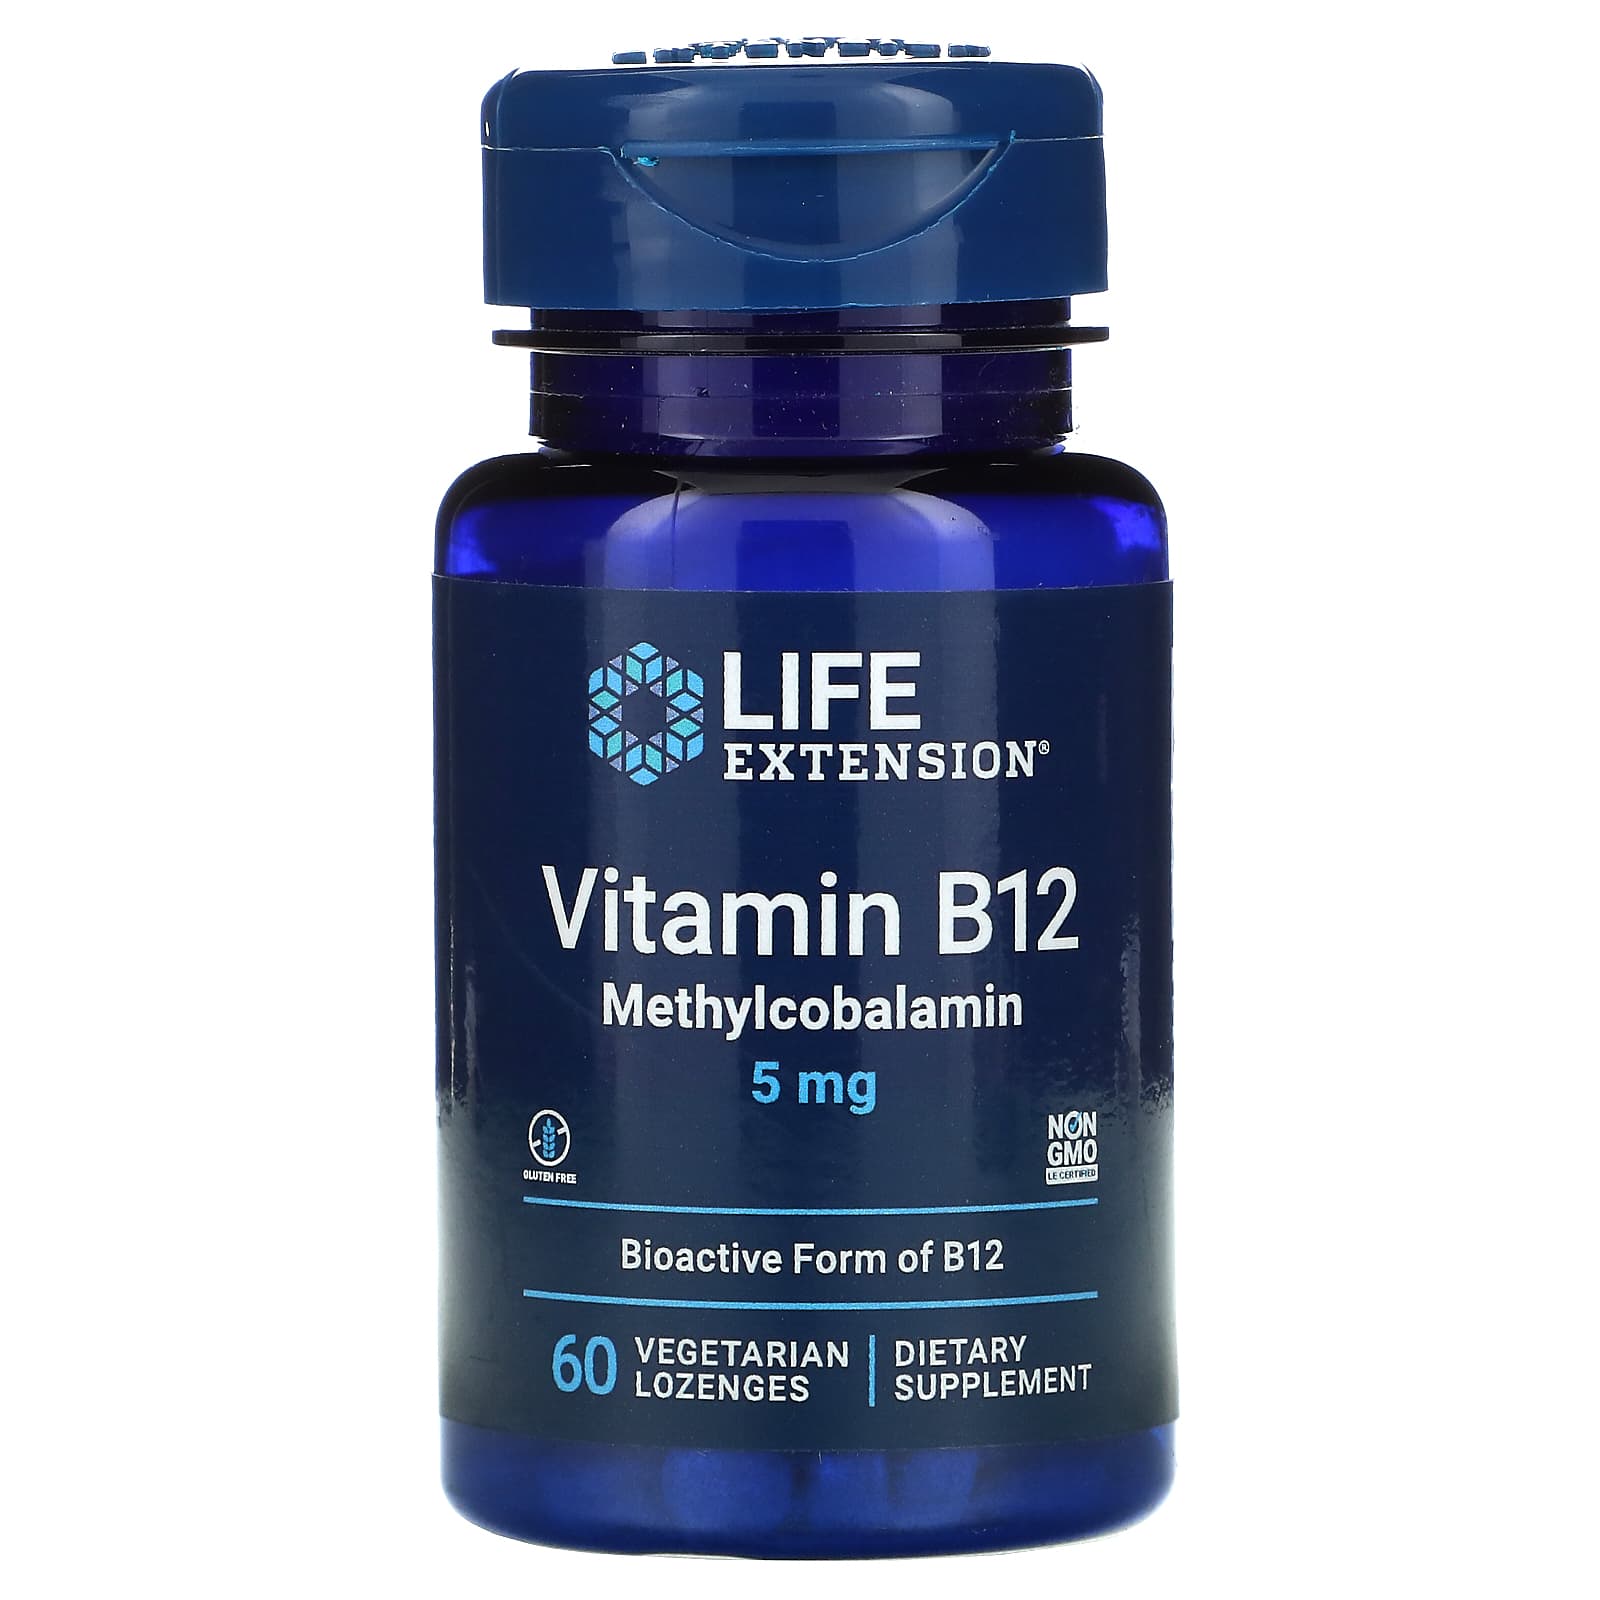 라이프익스텐션 <b>비타민B12 메틸코발라민 5mg</b> 채식주의자용 사탕 60개